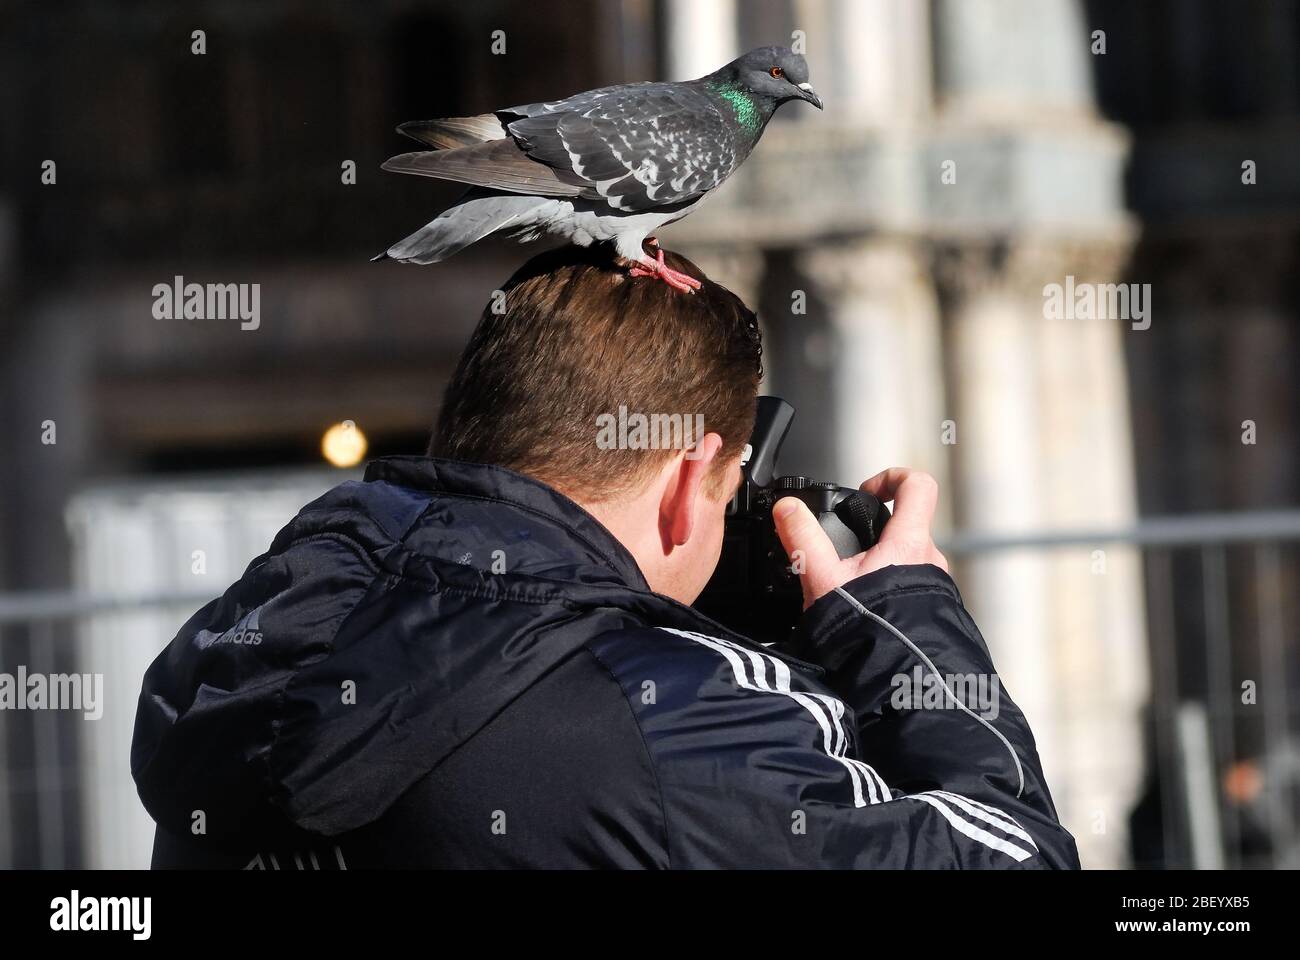 Venedig, San Marco Platz, eine Taube posiert auf dem Kopf eines Touristen fotografieren Tauben. Stockfoto